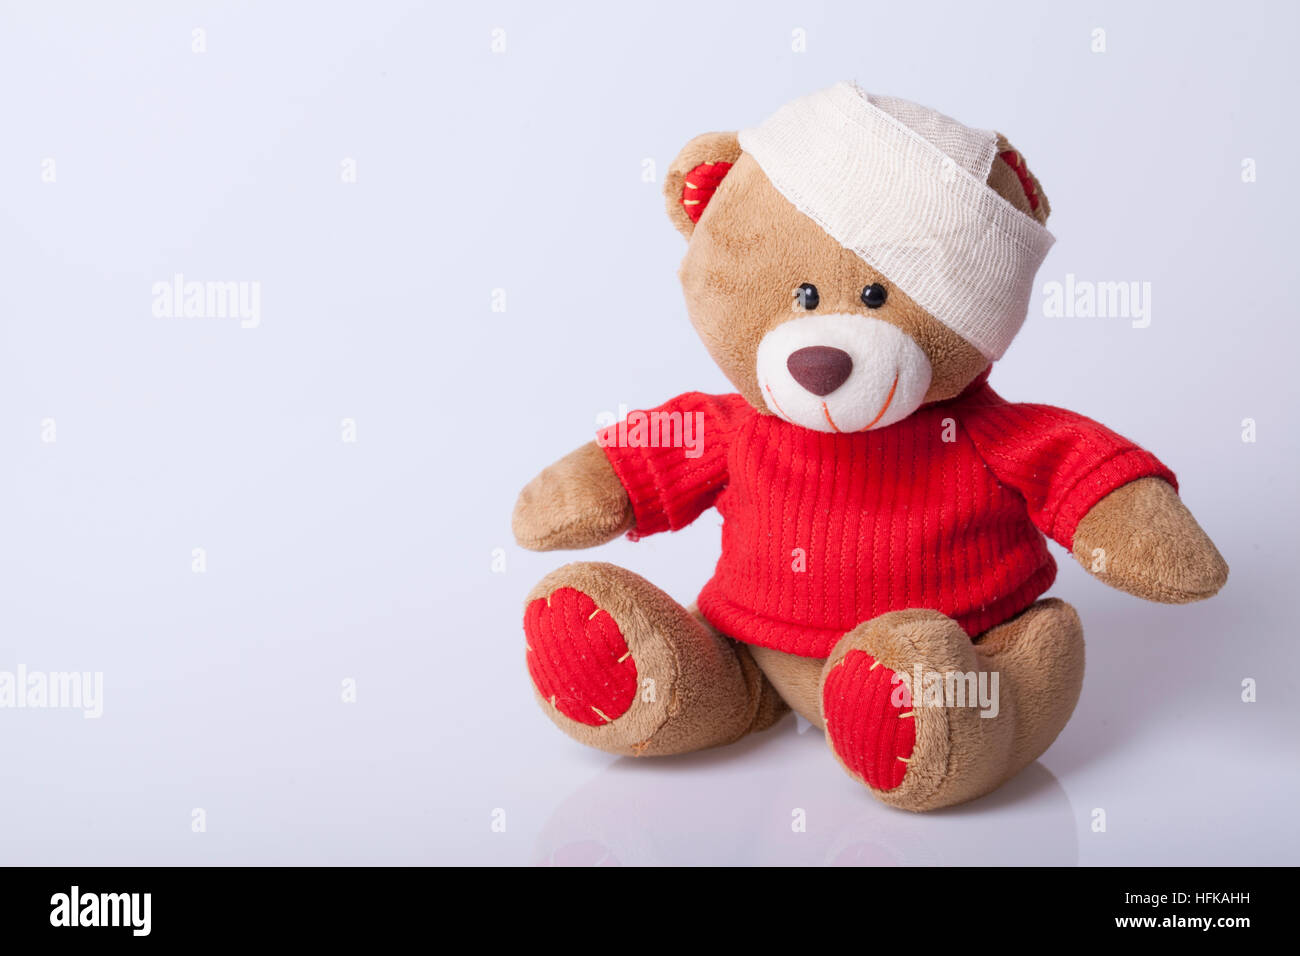 Bär Spielzeug ist krank, selektiven Fokus und kleine Schärfentiefe  Stockfotografie - Alamy